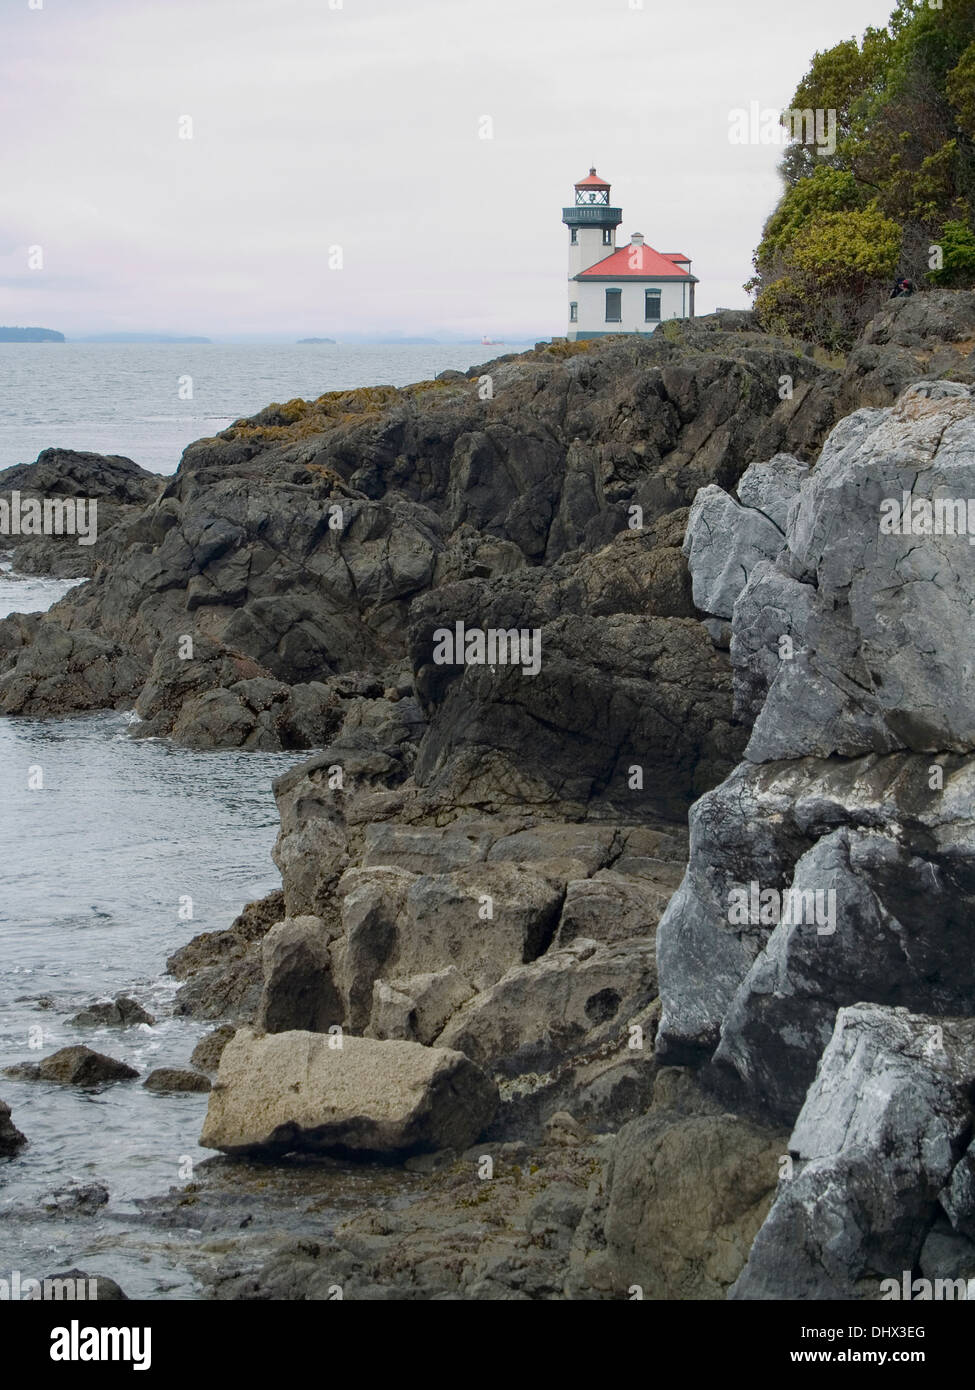 Four à Chaux Leuchtturm,San Juan Island, Washington State Banque D'Images